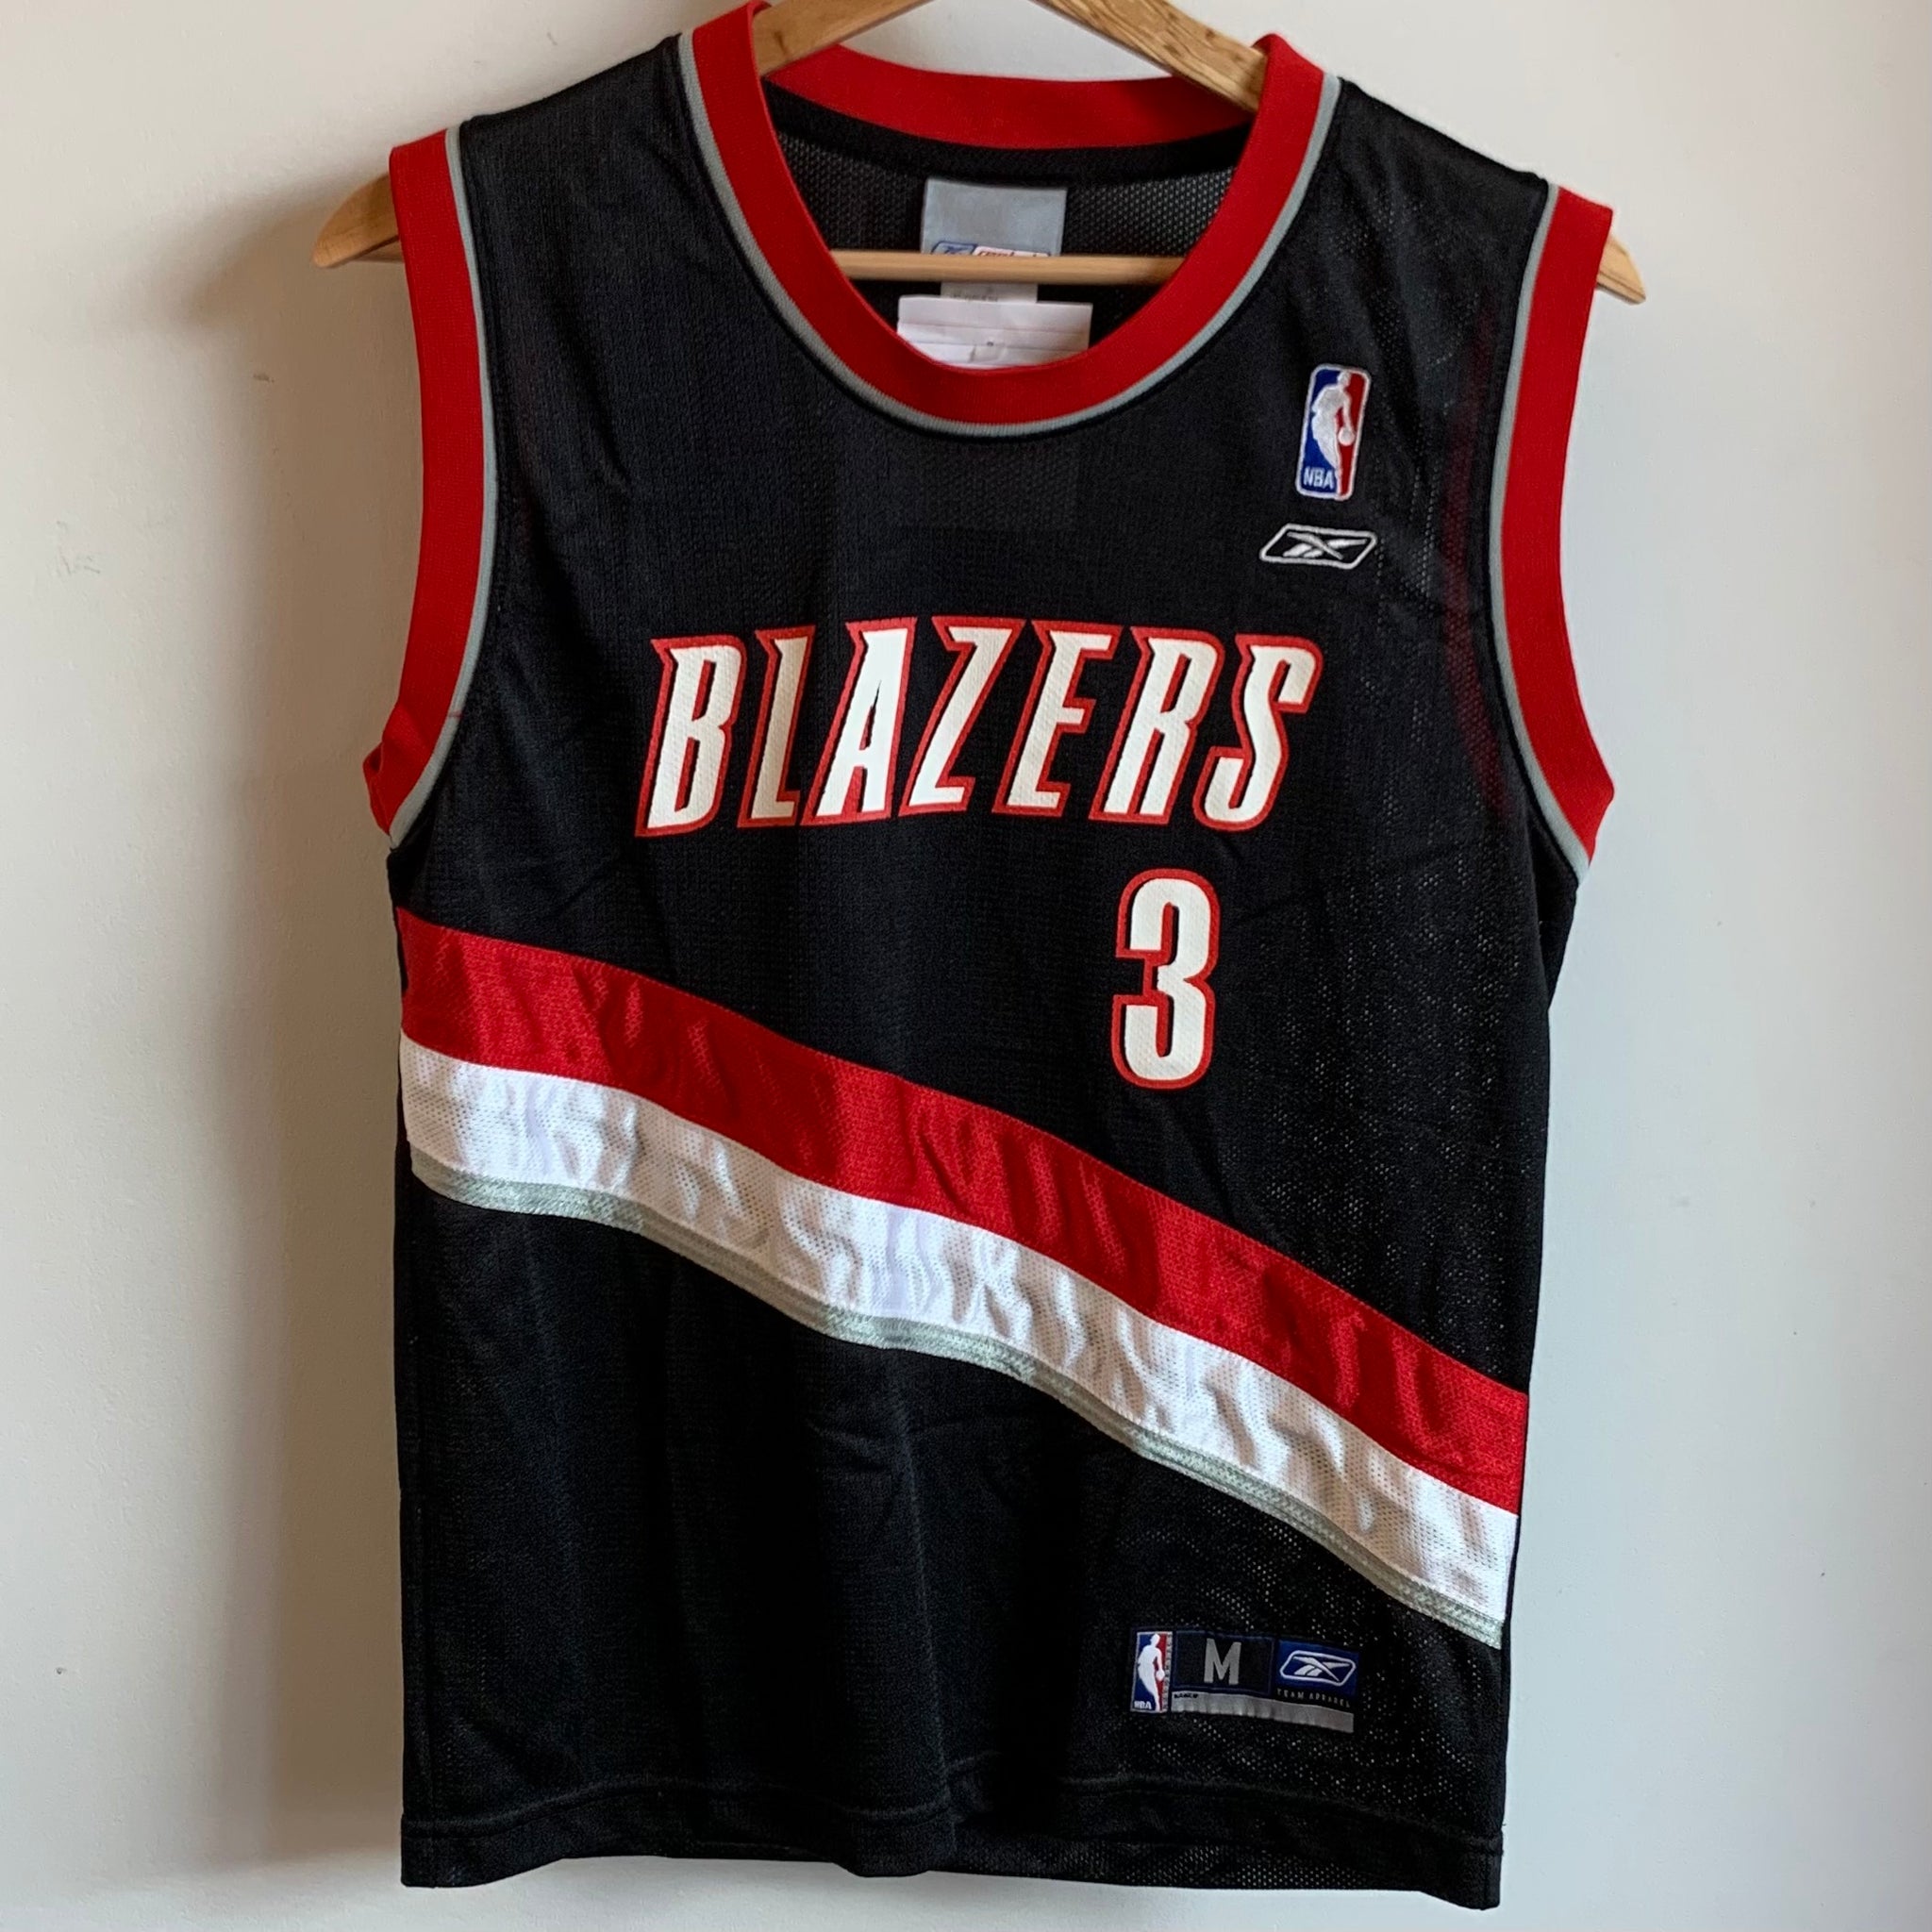 Portland Trail Blazers Team Shop in NBA Fan Shop 